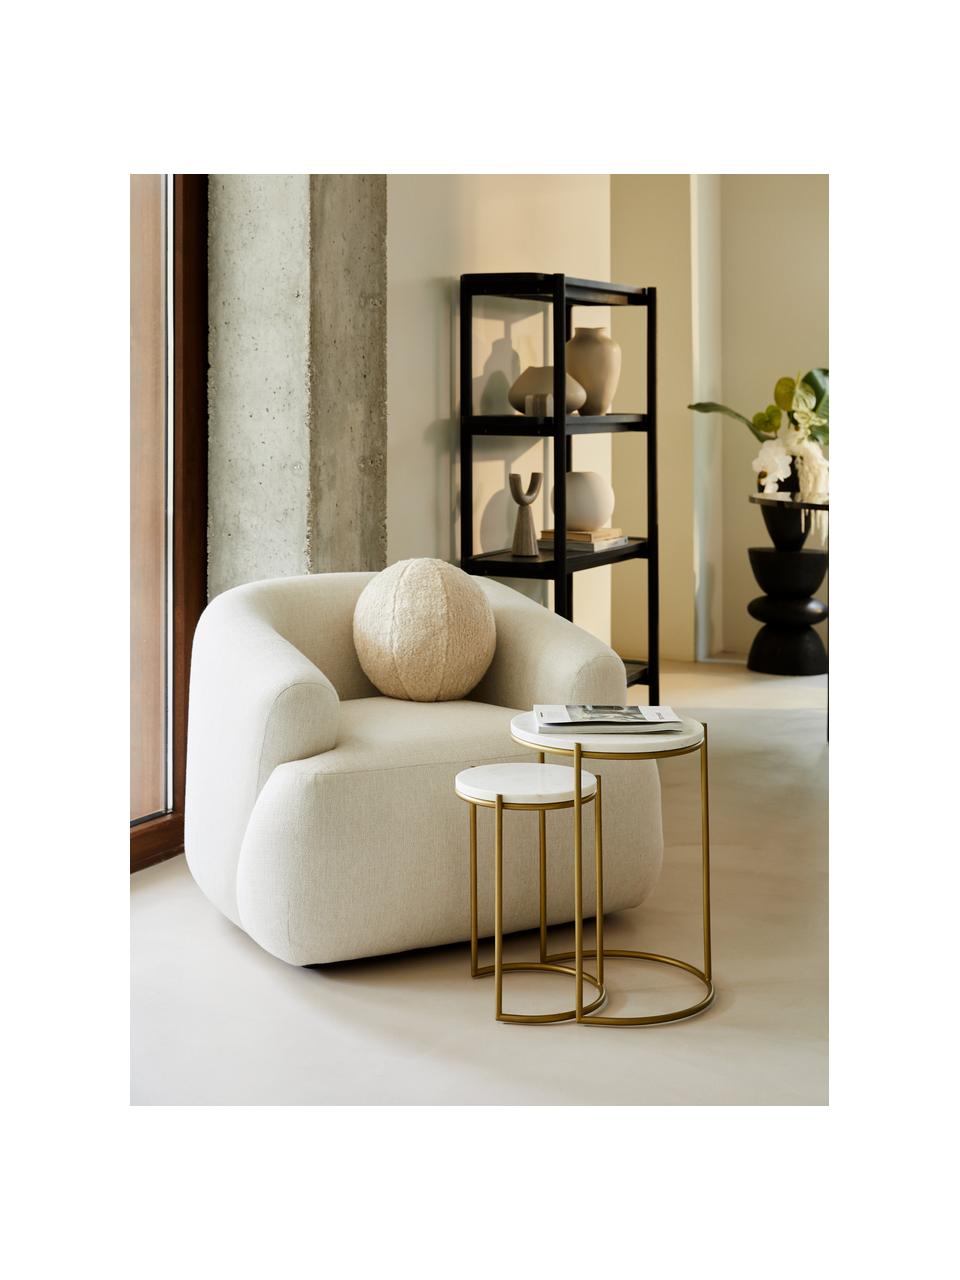 Marmor-Beistelltisch-Set Ella, 2-tlg., Weiß, marmoriert, Goldfarben, Set mit verschiedenen Größen